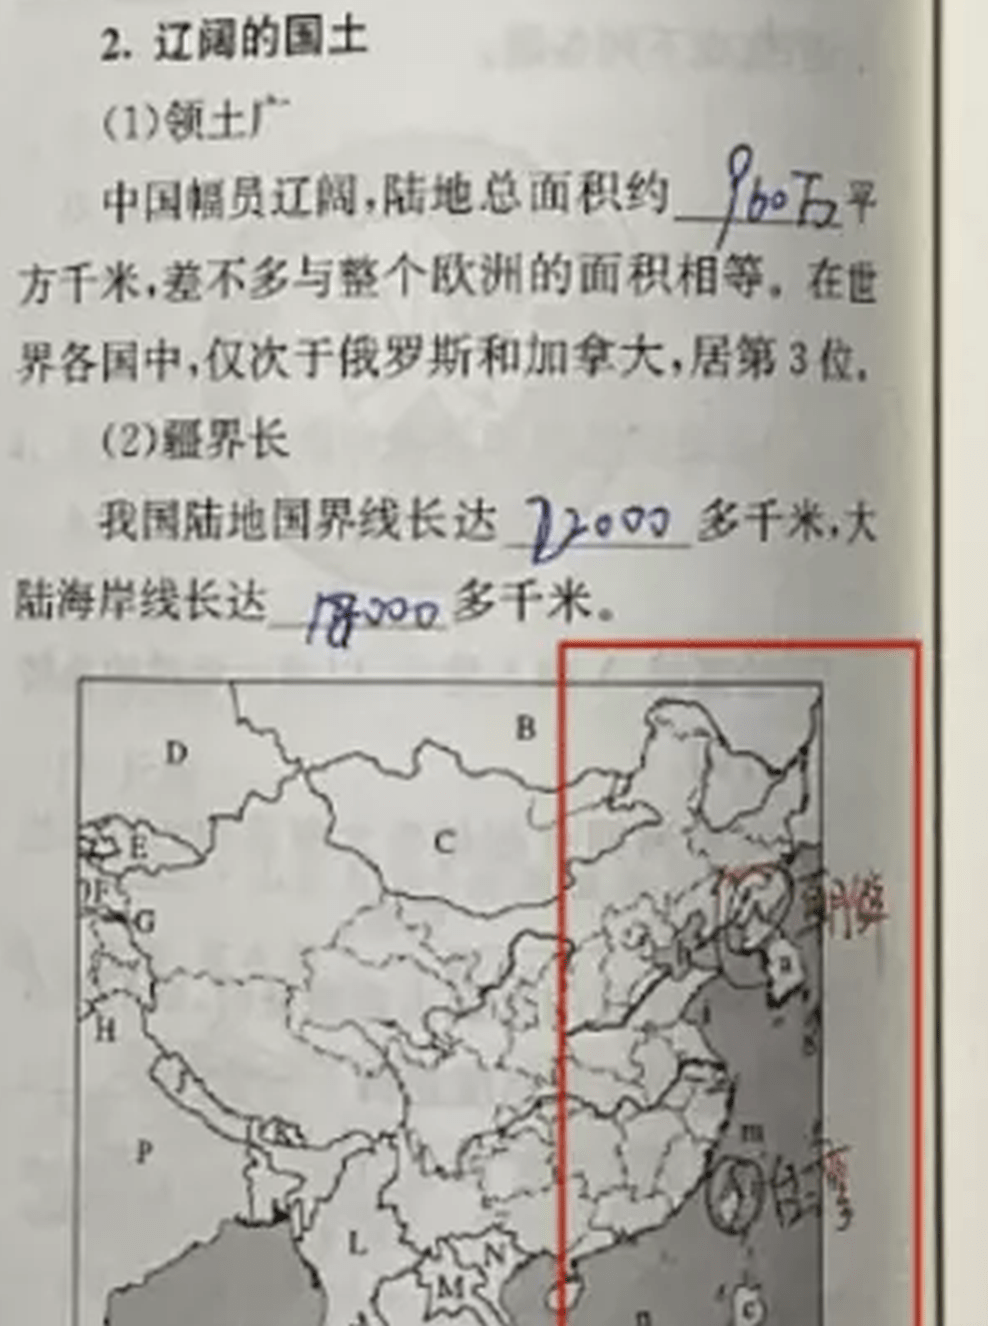 初中地理練習冊的地圖中台灣省處誤加了一個A。